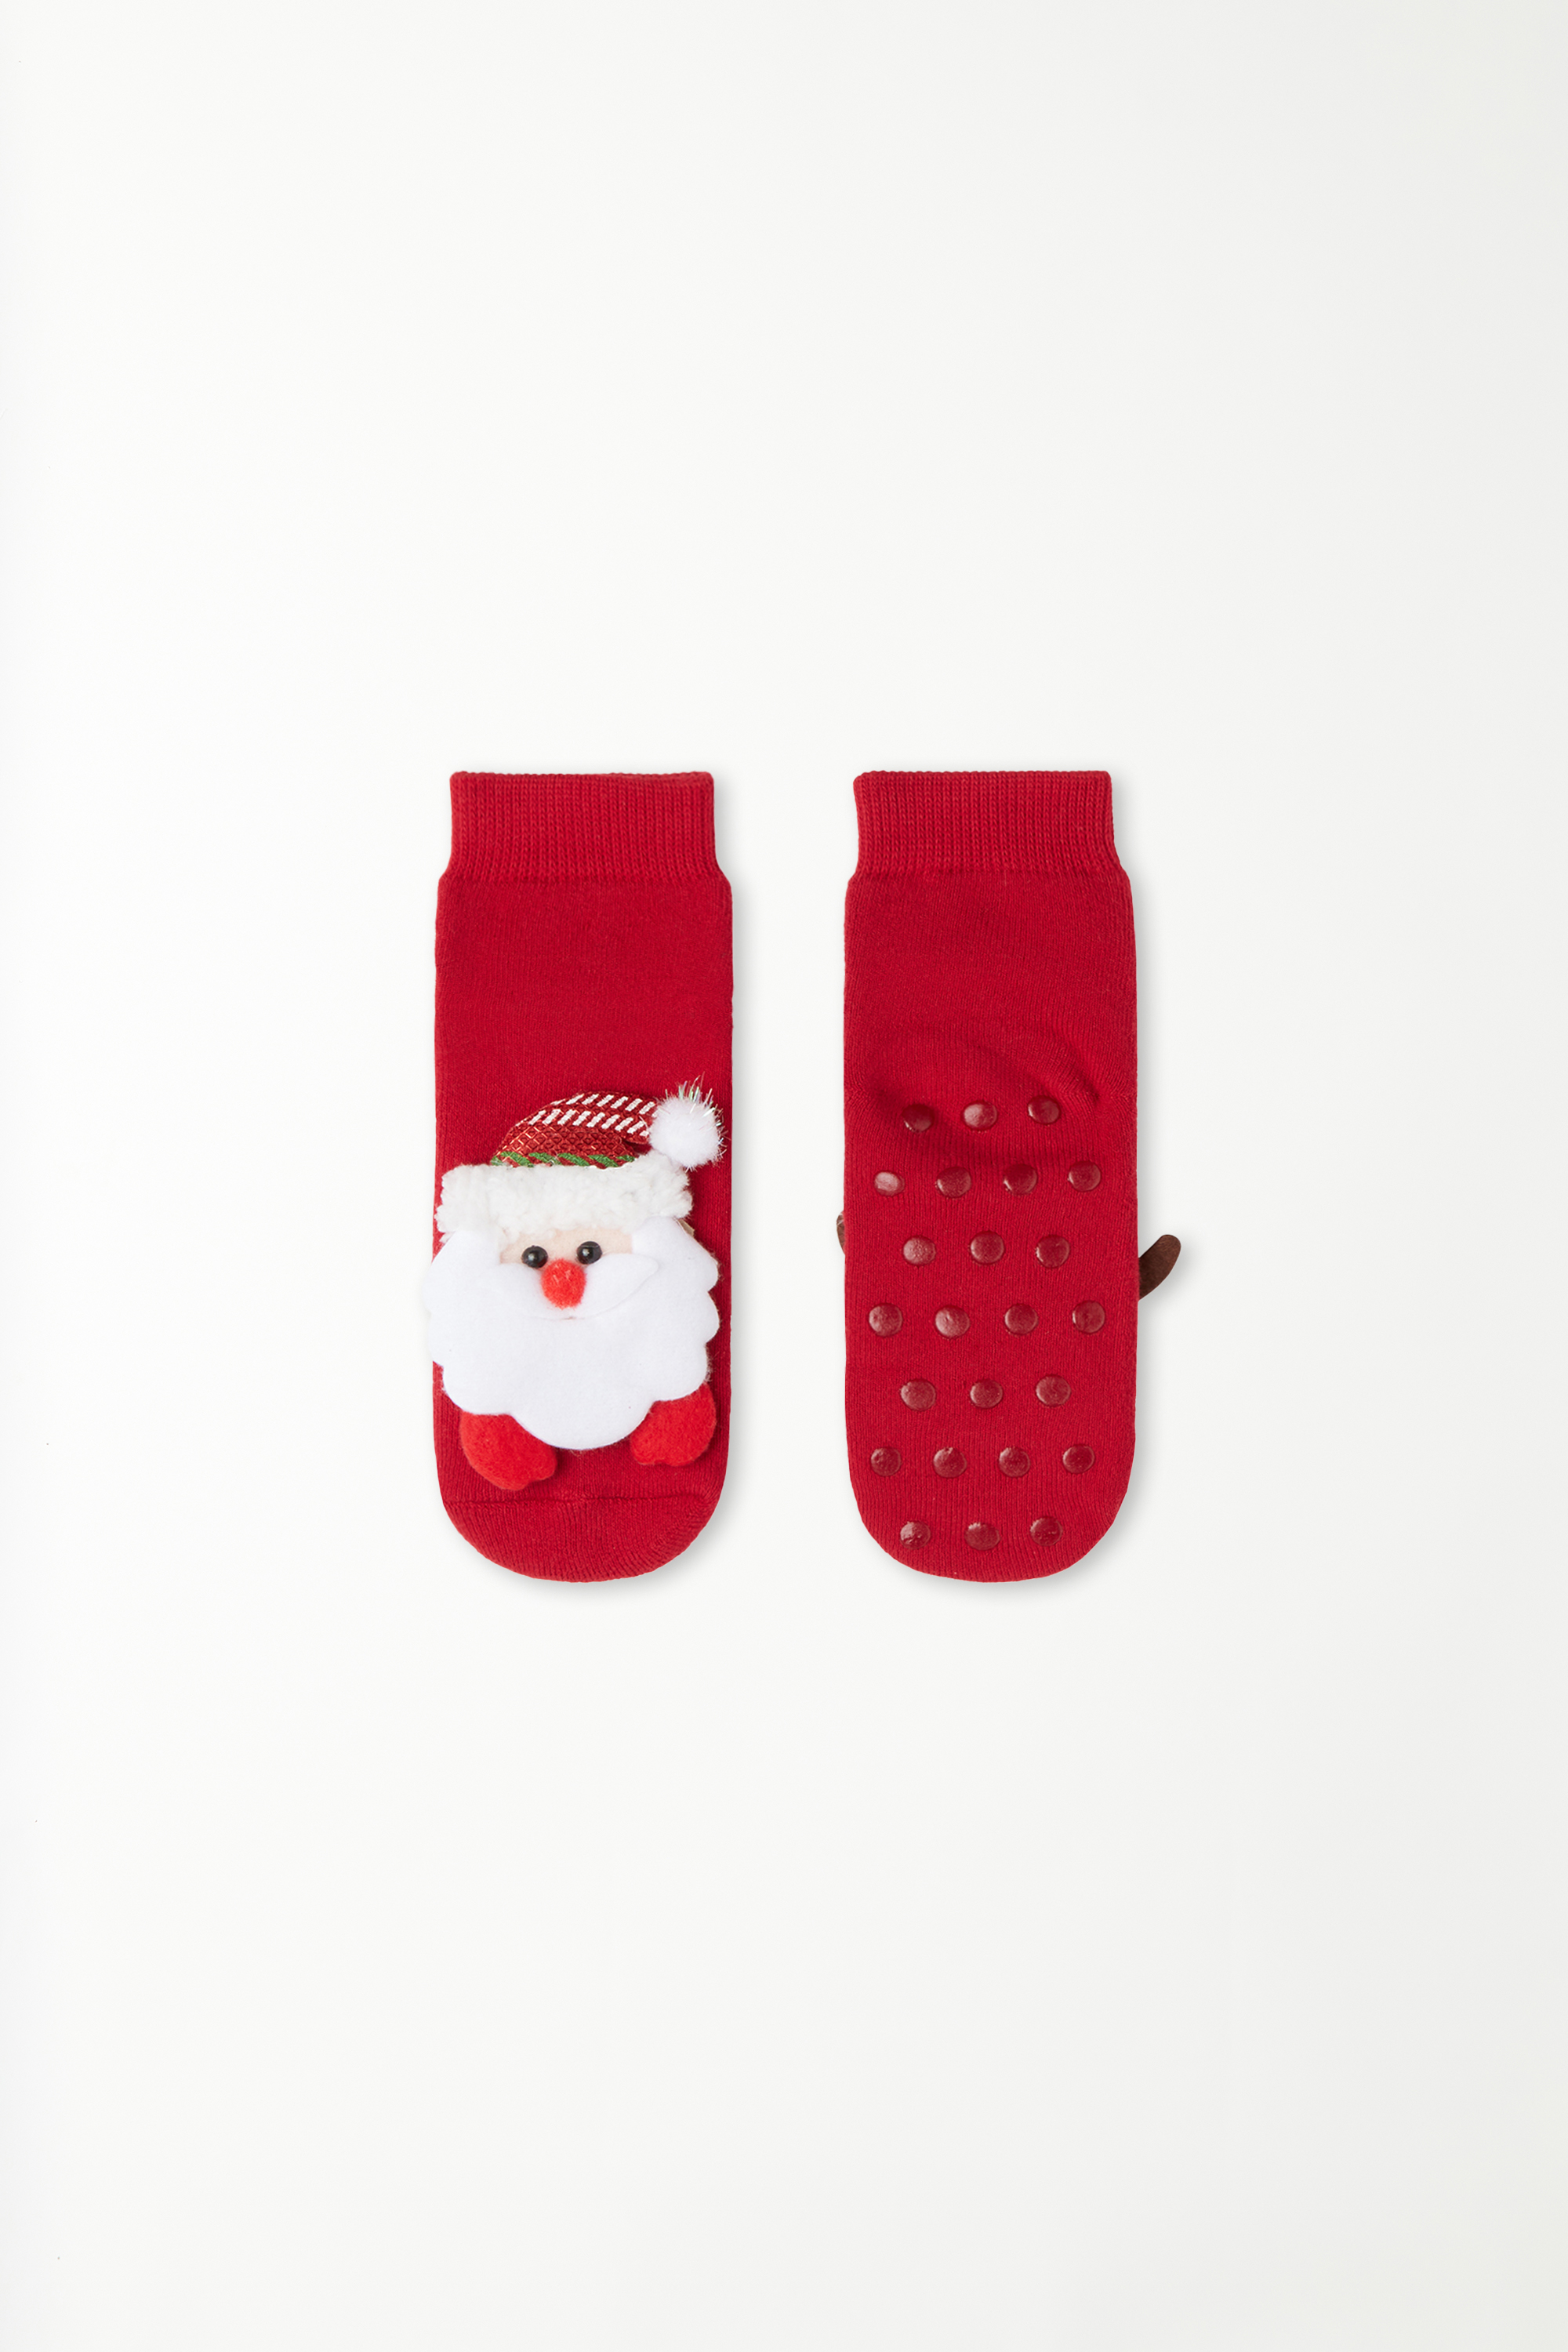 Протиковзні Шкарпетки з Аплікацією «Олень Санта-Клауса» Унісекс для Дітей